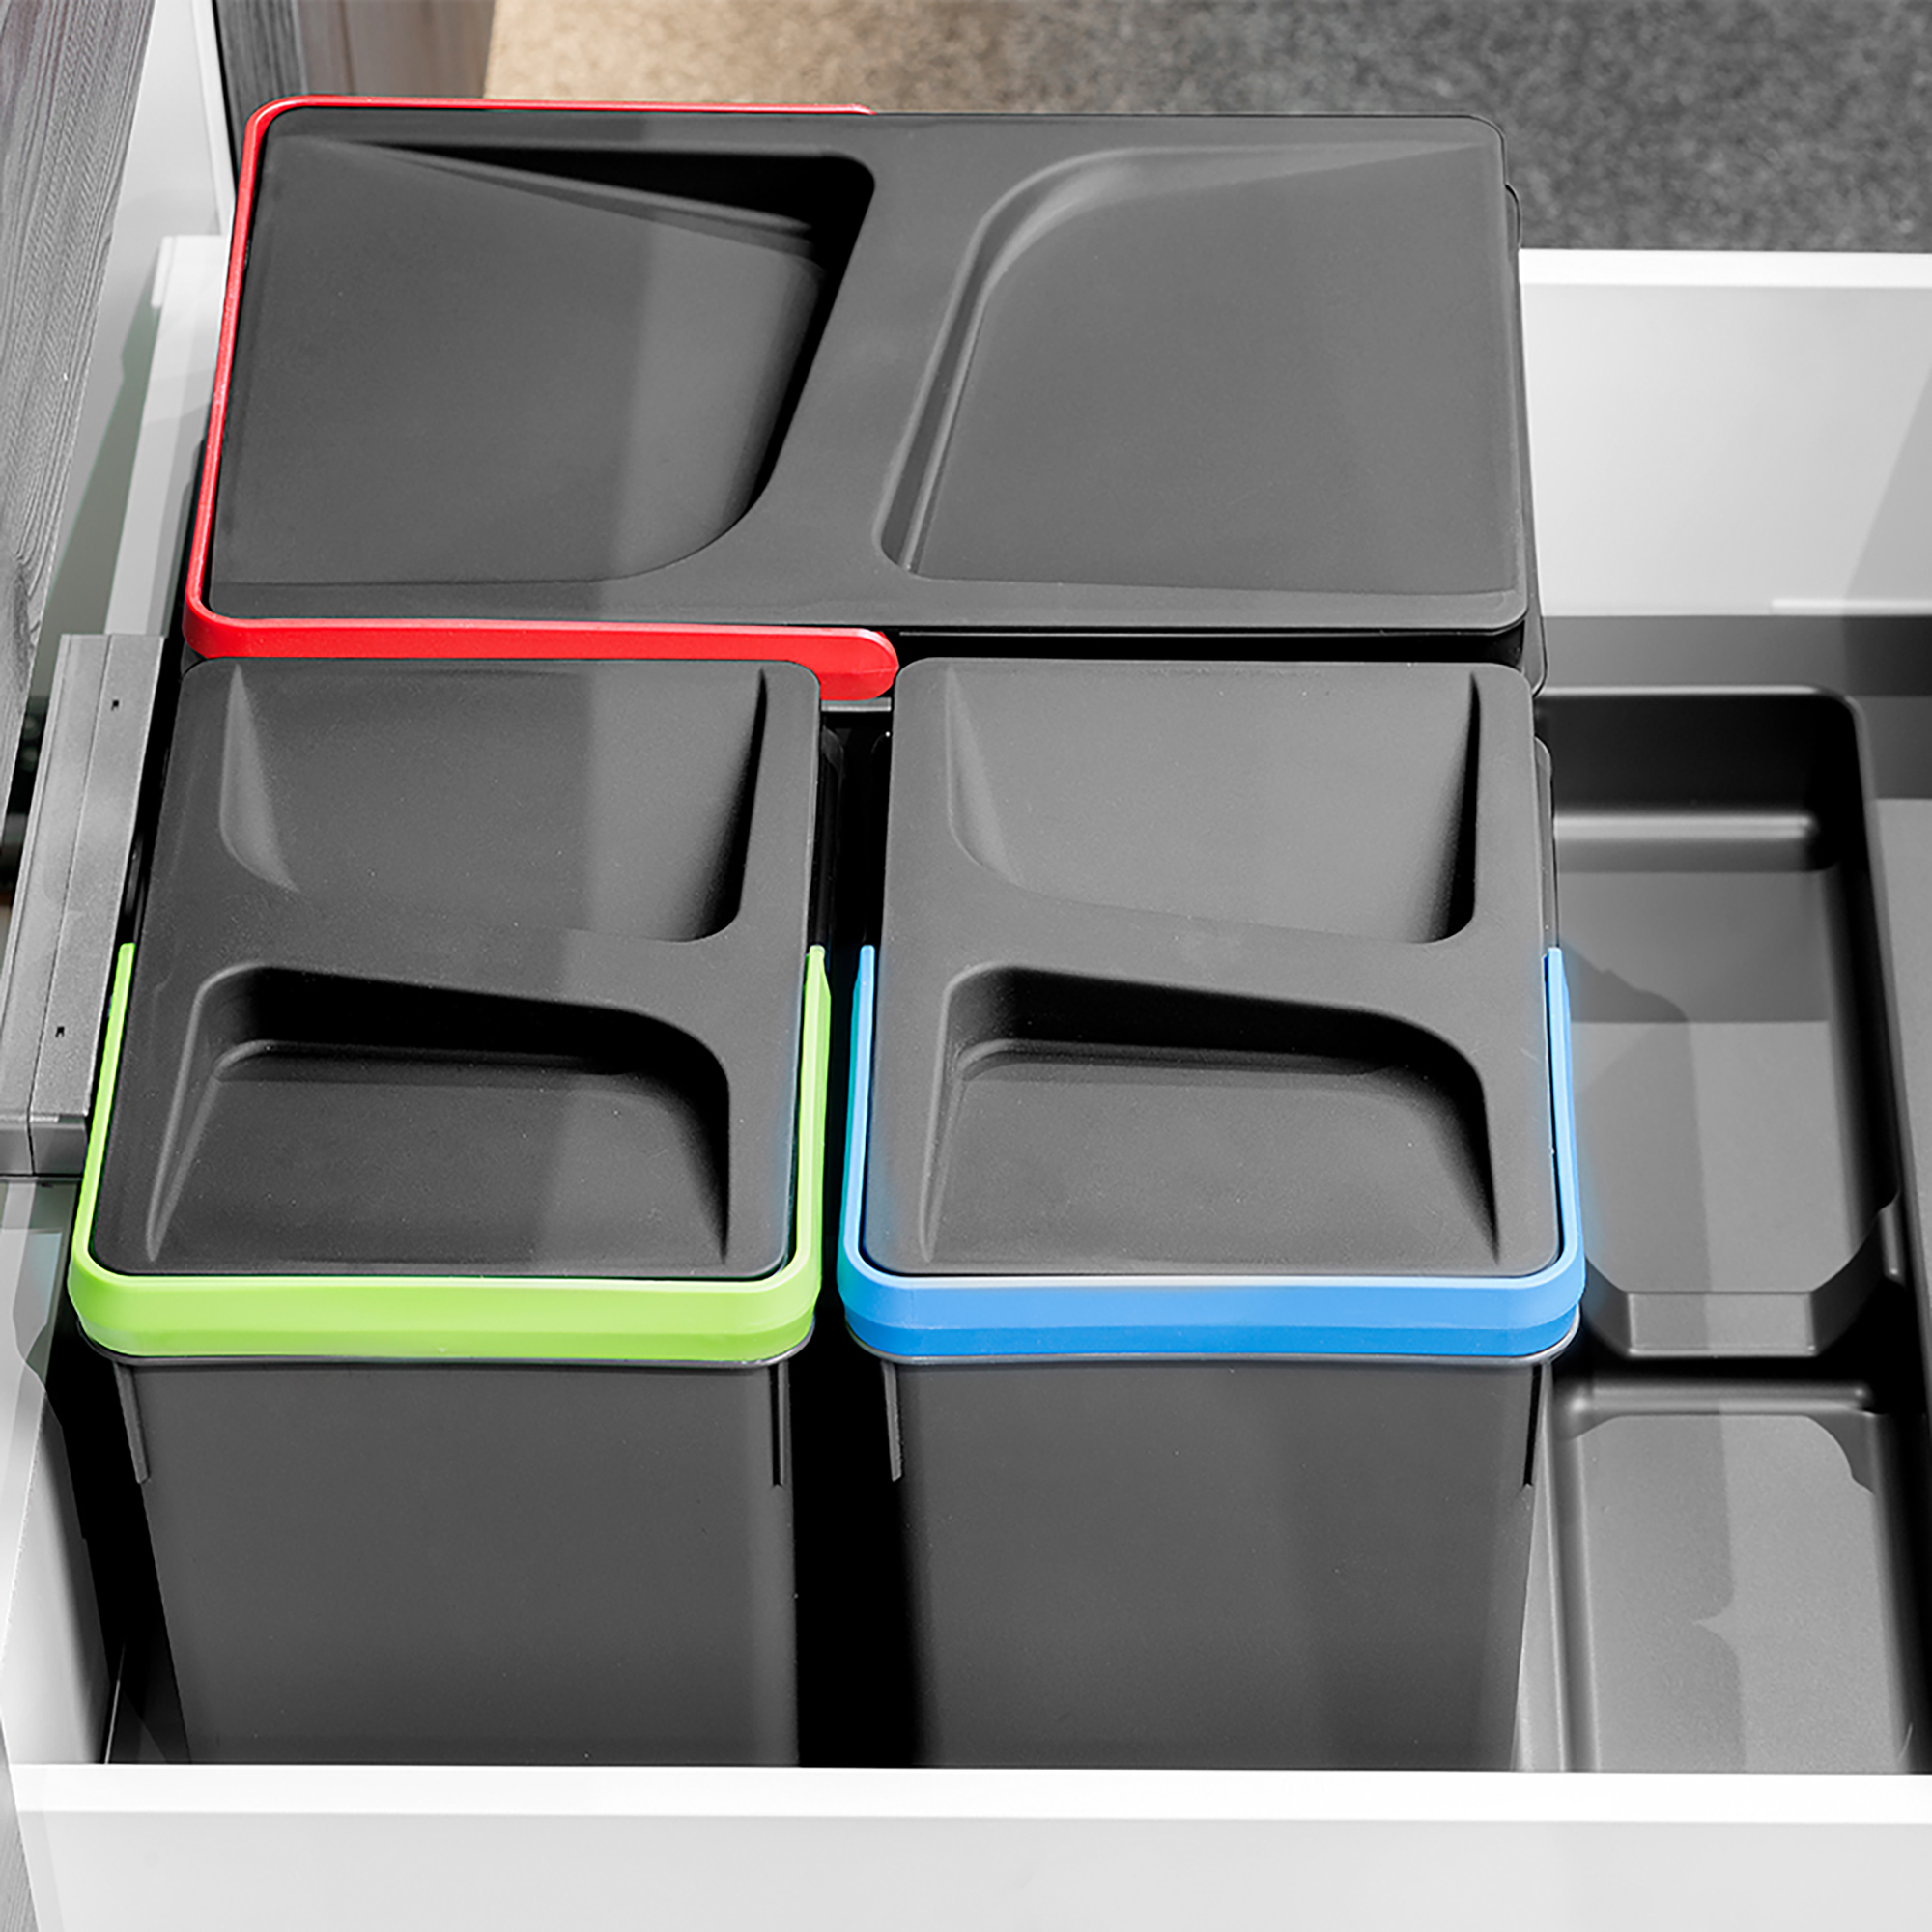  Base Recycle pour poubelles pour tiroir de cuisine, 2 cavites, Plastique gris antracite, Plastique.